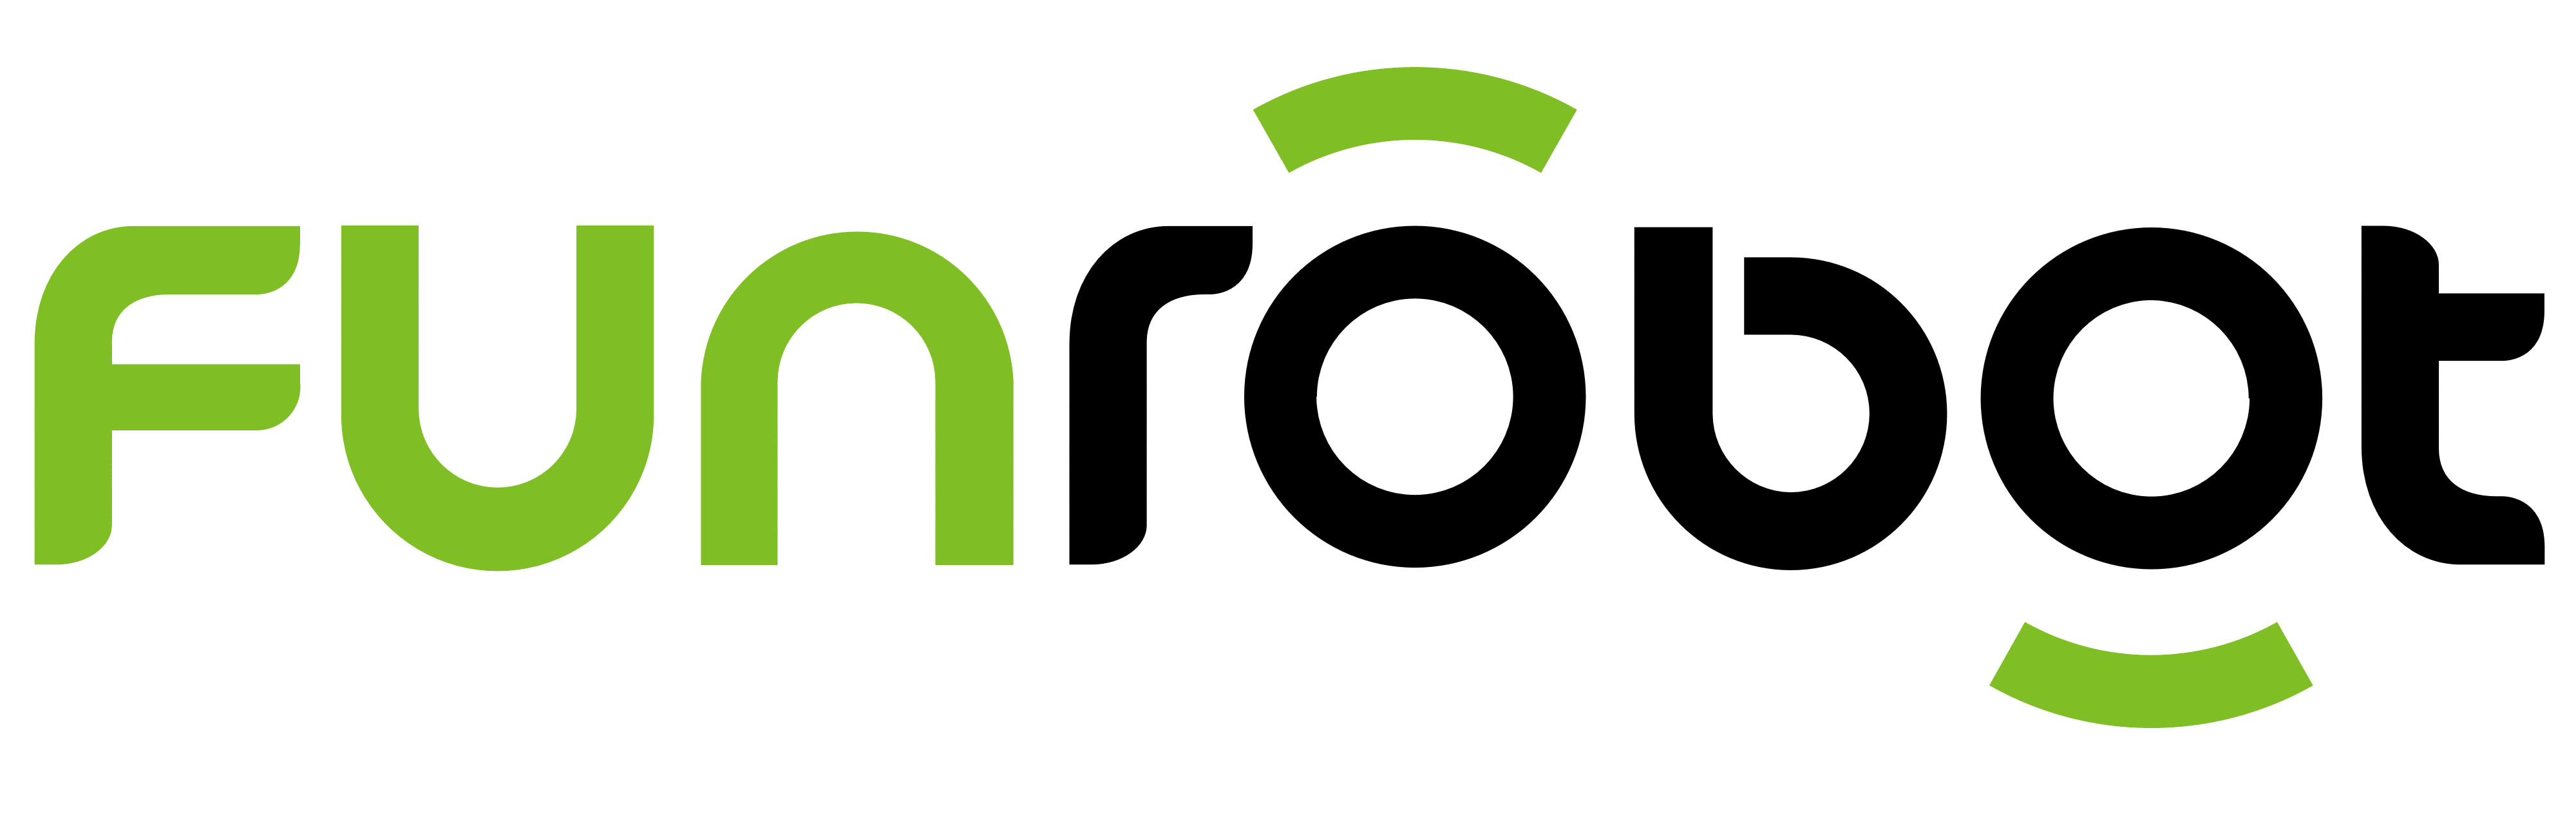 FunRobot logo, logotype